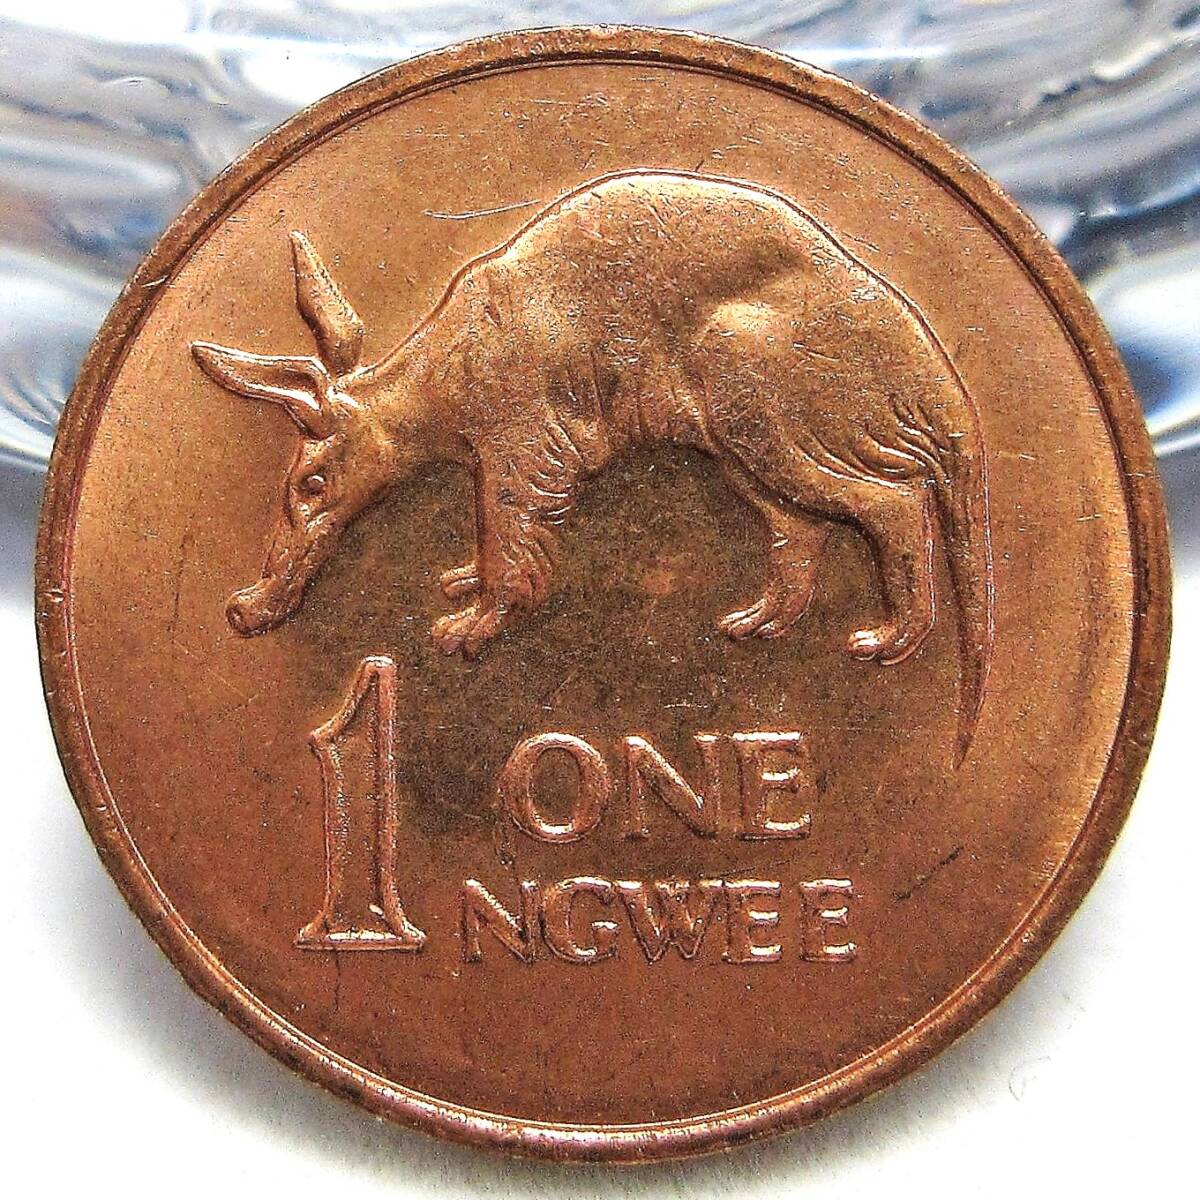 ザンビア 1ングェー 1983年 17.50mm 2.09gの画像1